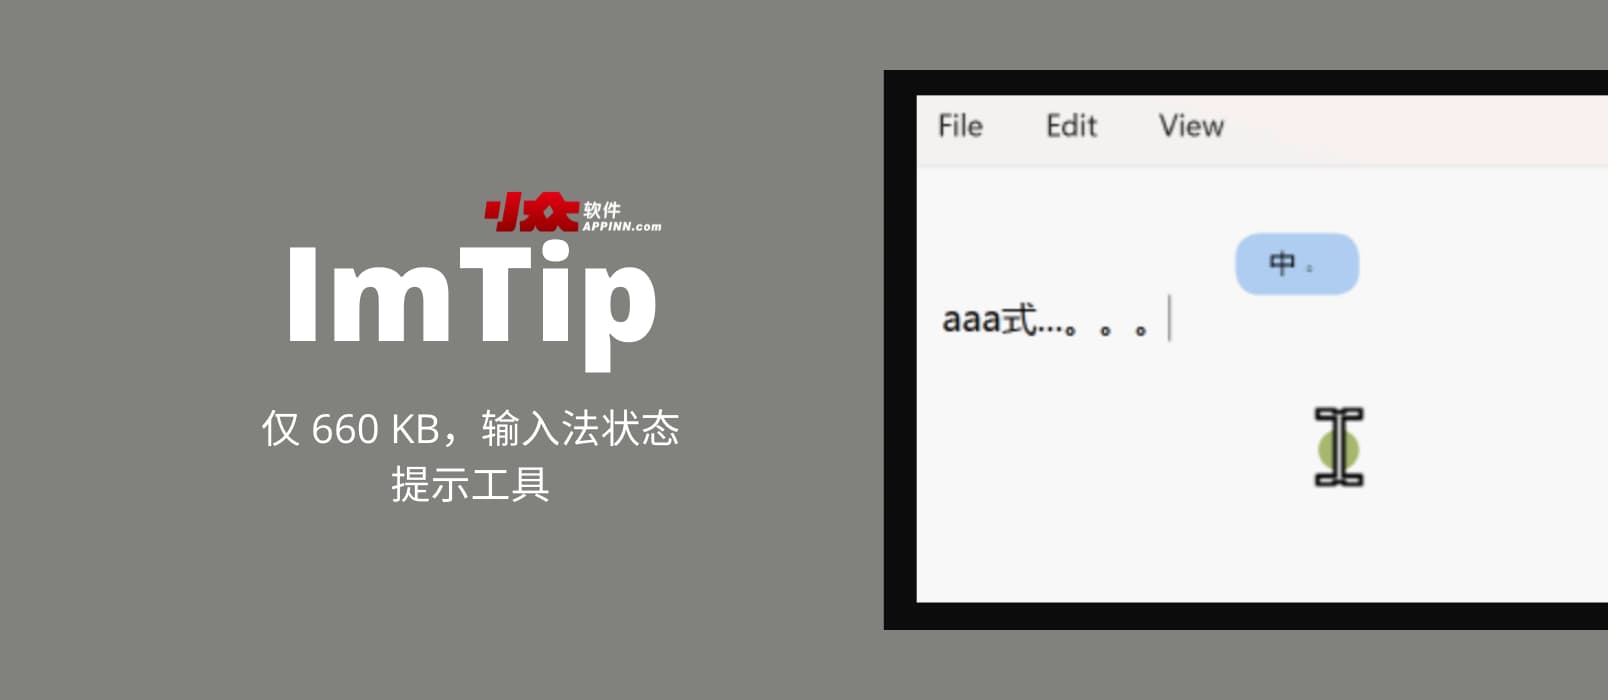 ImTip - 仅 660 KB，输入法状态提示工具[Windows]